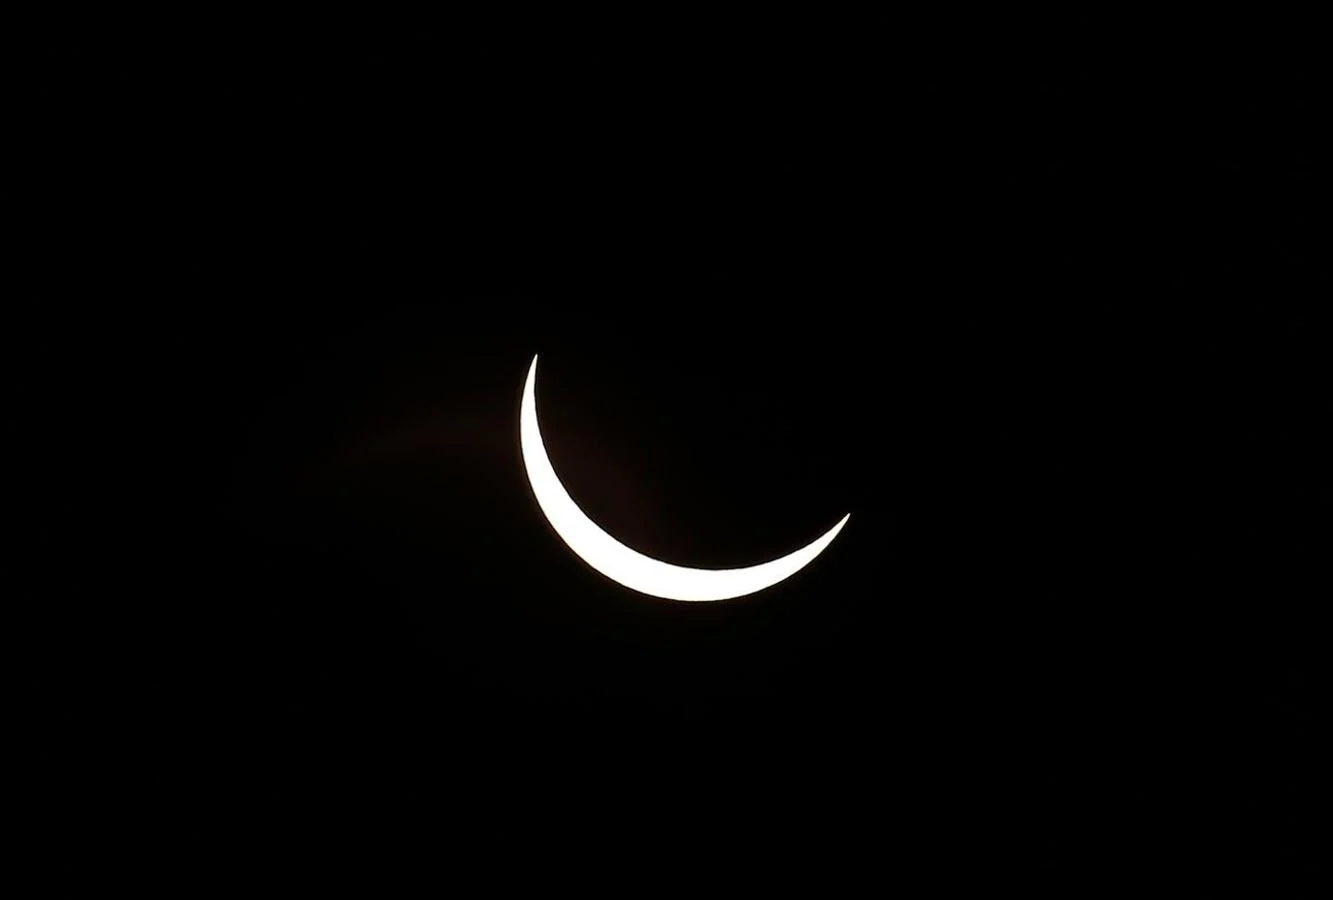 Así se vio el gran eclipse sudamericano. Es el único eclipse solar total del año. Comenzó su camino en el Pacífico sur, cerca de la isla Pitcaerin, y terminó en tierra habiendo tocado solo dos países: Chile y Argentina